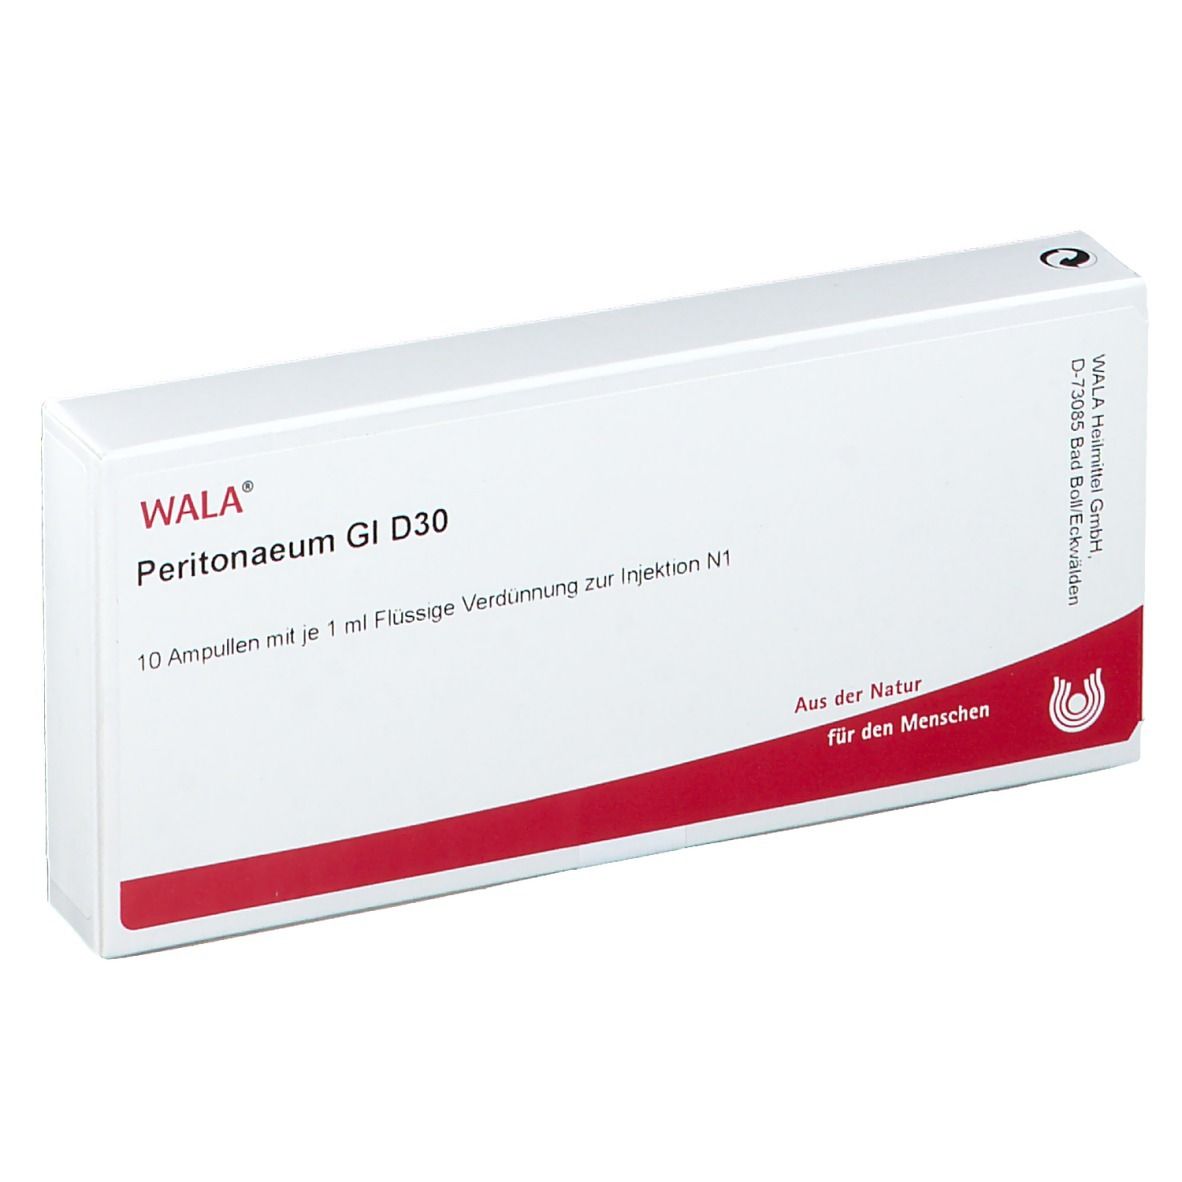 Wala® Peritonaeum Gl D 30